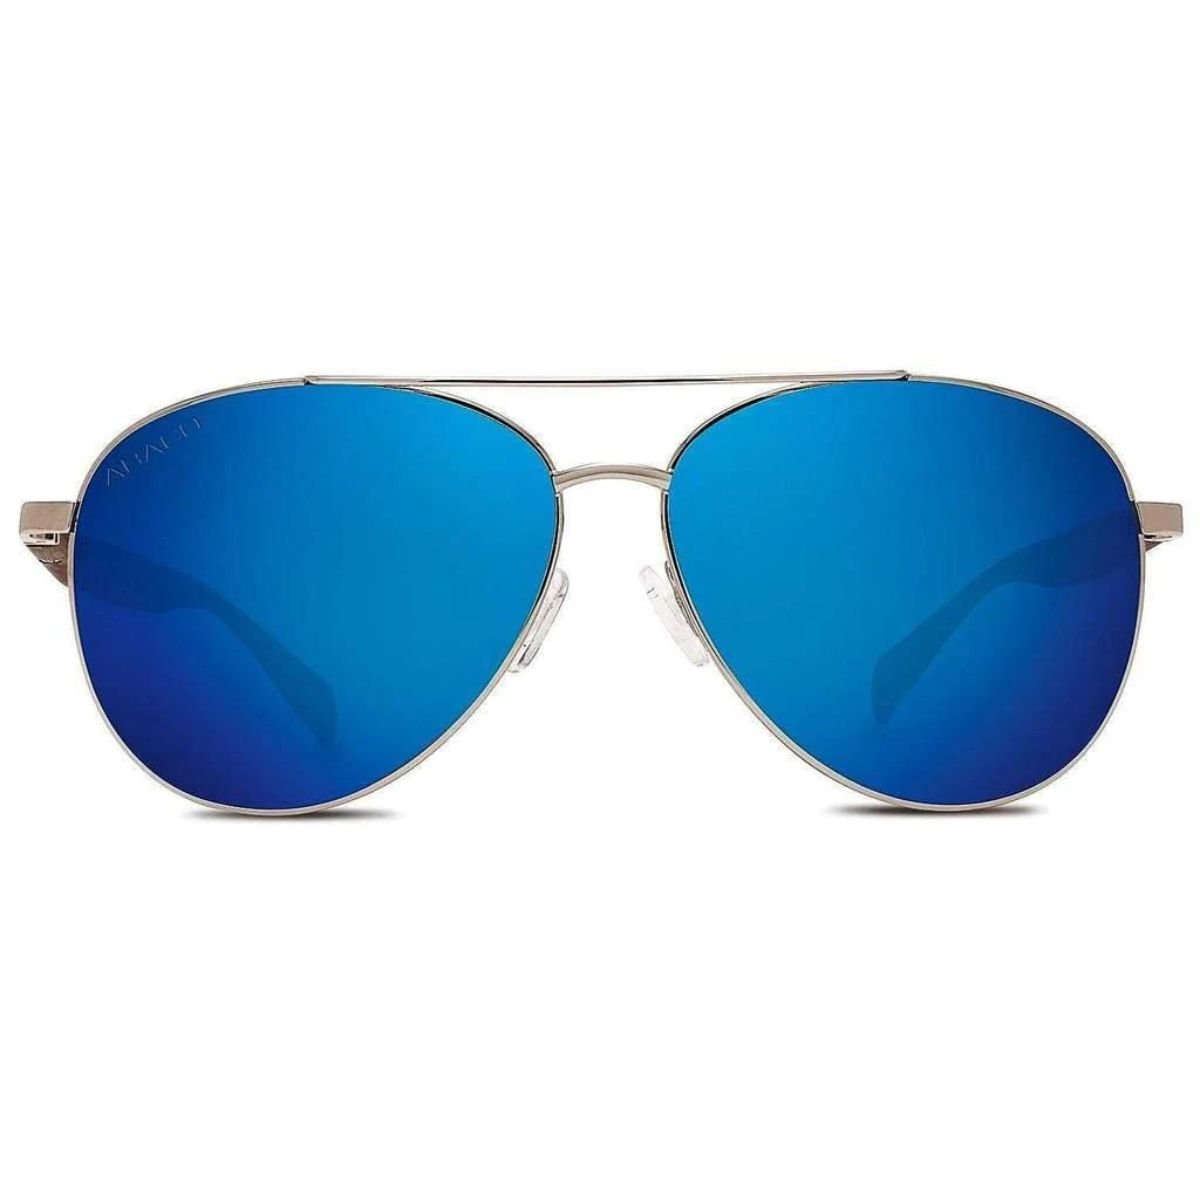 Abaco Burton Sunglasses in Silver/Deep Blue Mirror - BoardCo